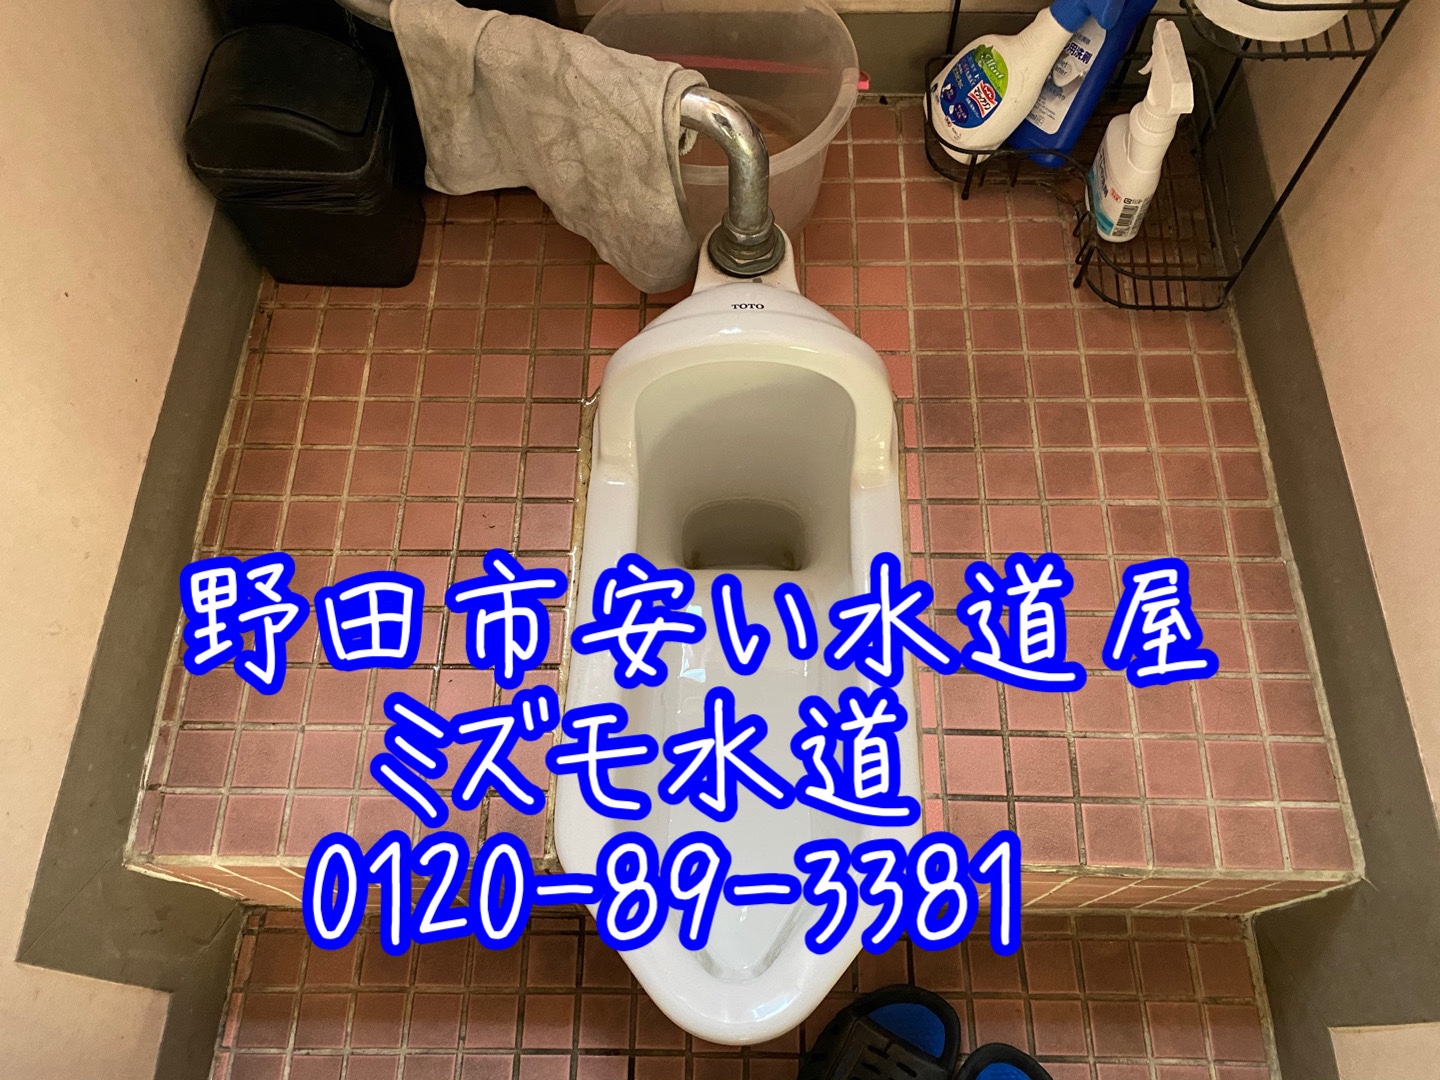 野田氏和式トイレ便器水漏れ修理